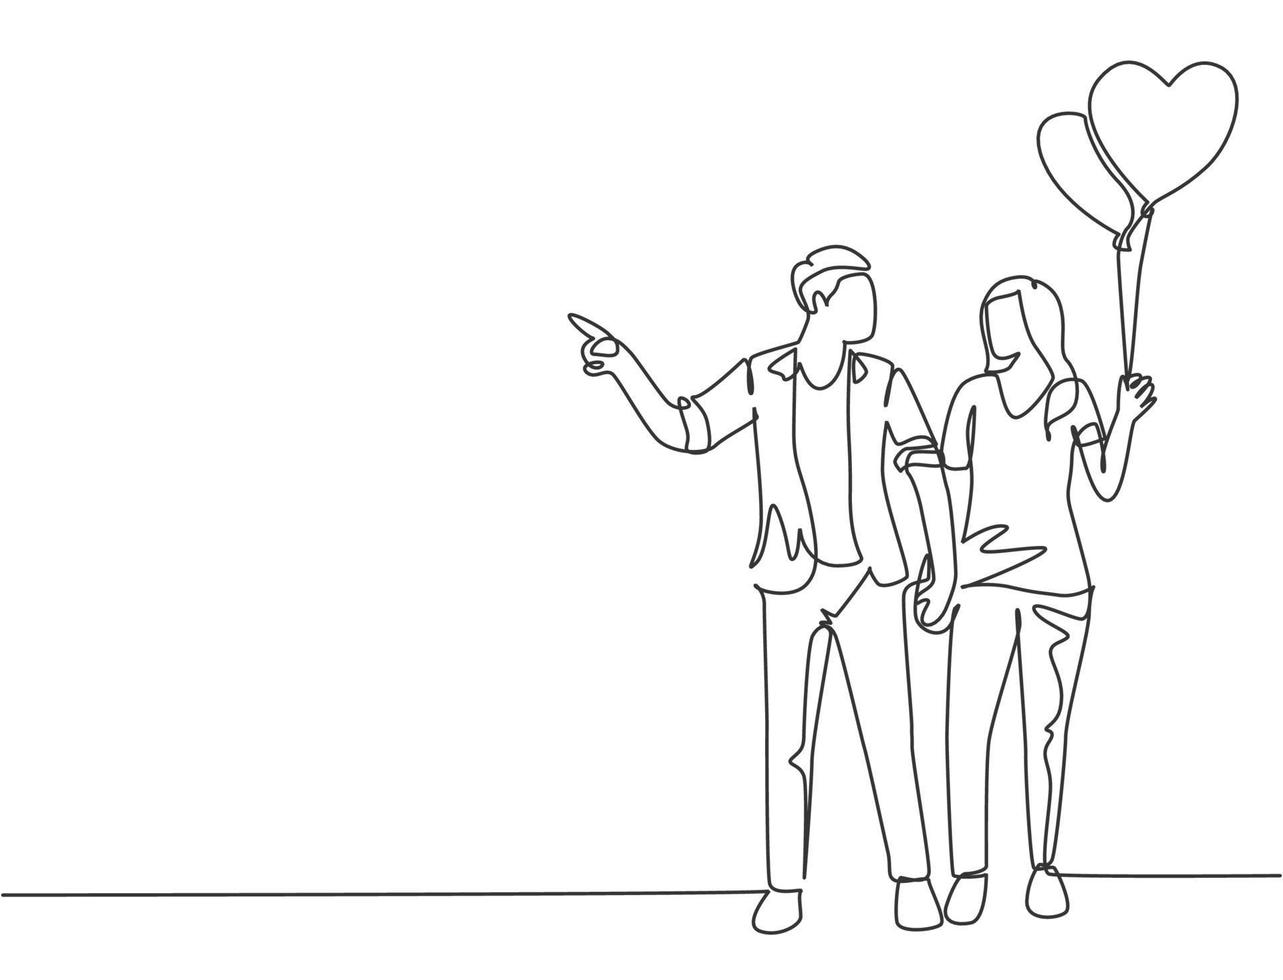 een enkele lijntekening van jonge gelukkige man en vrouw paar samen een wandeling maken en een hartvormige ballon vasthouden. romantisch huwelijk liefde concept continu lijn tekenen ontwerp vectorillustratie vector